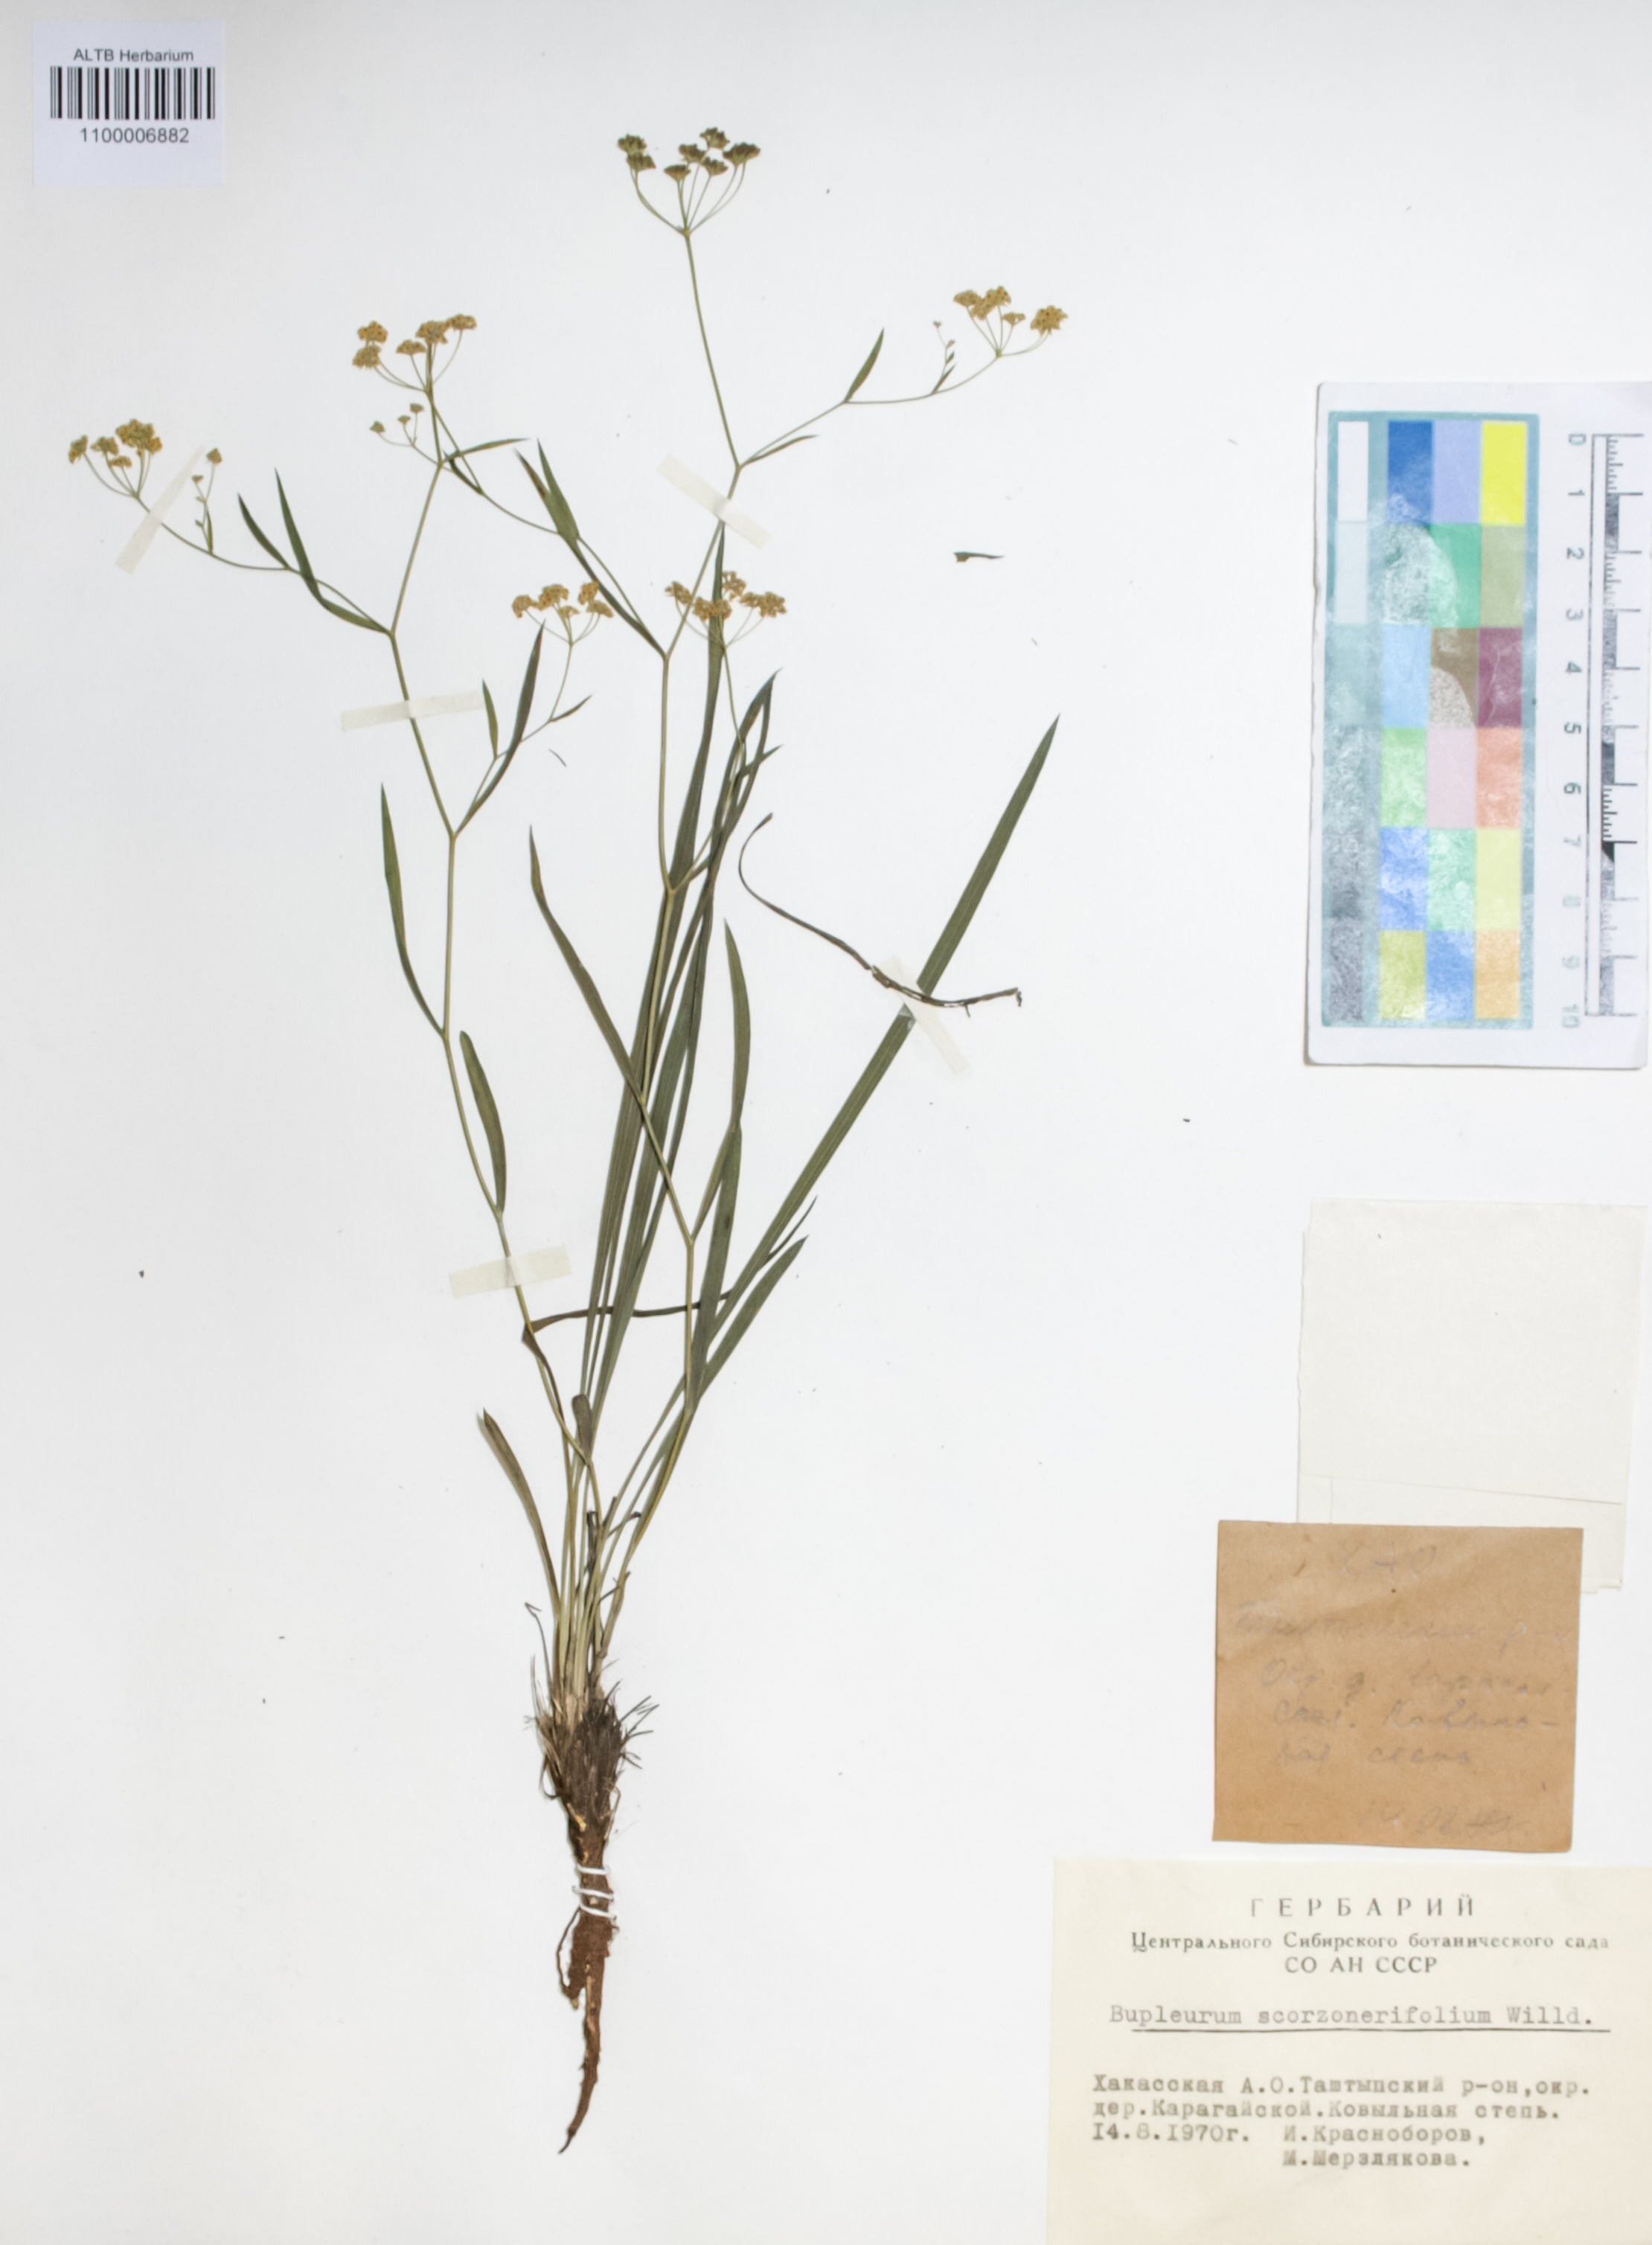 Apiaceae,Bupleurum scorzonerifolium Willd.